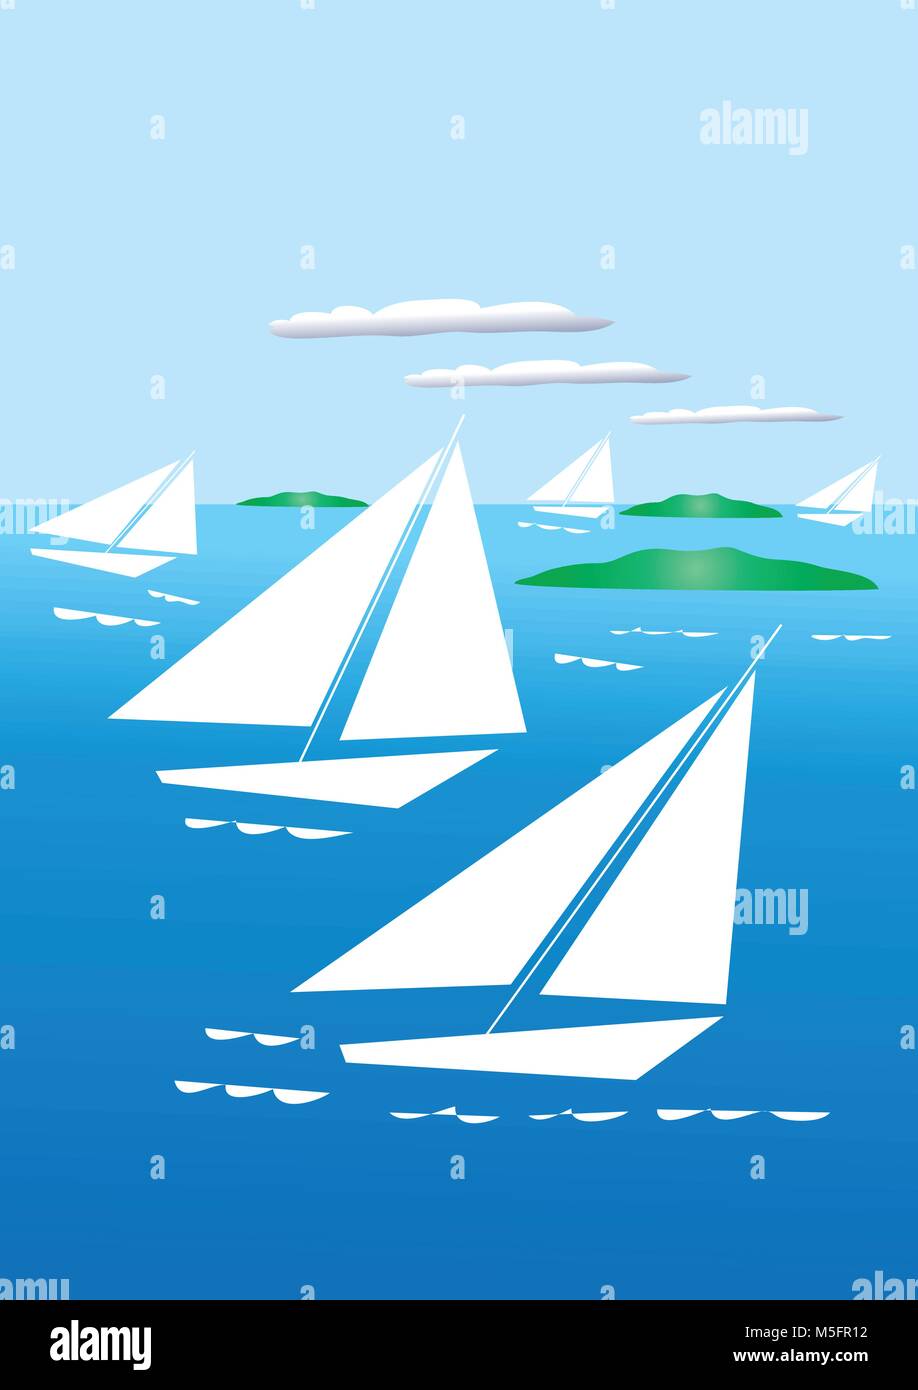 Eine illustratiion von fünf stilisierte England Yatchs Segeln in einem ruhigen Meer übersät mit kleinen Inseln und einige Wolken im Himmel Stock Vektor